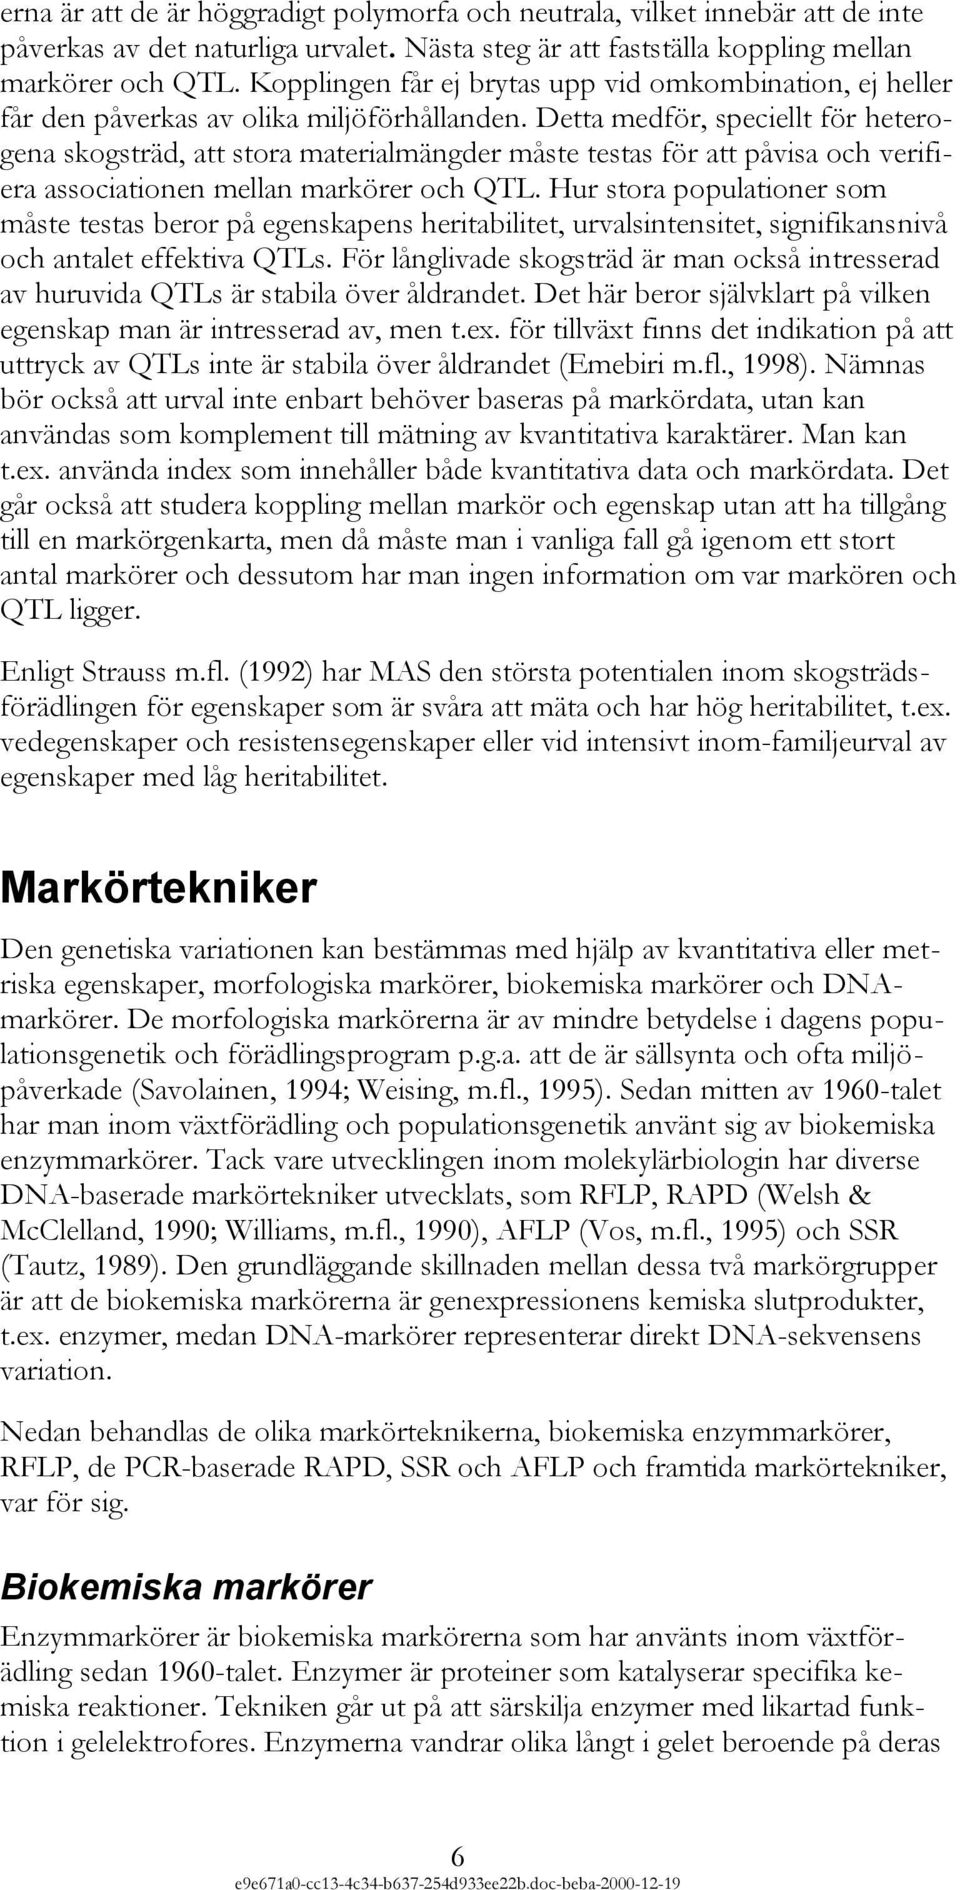 Molekylära markörer någonting för skogsträdsförädlingen? - PDF ...